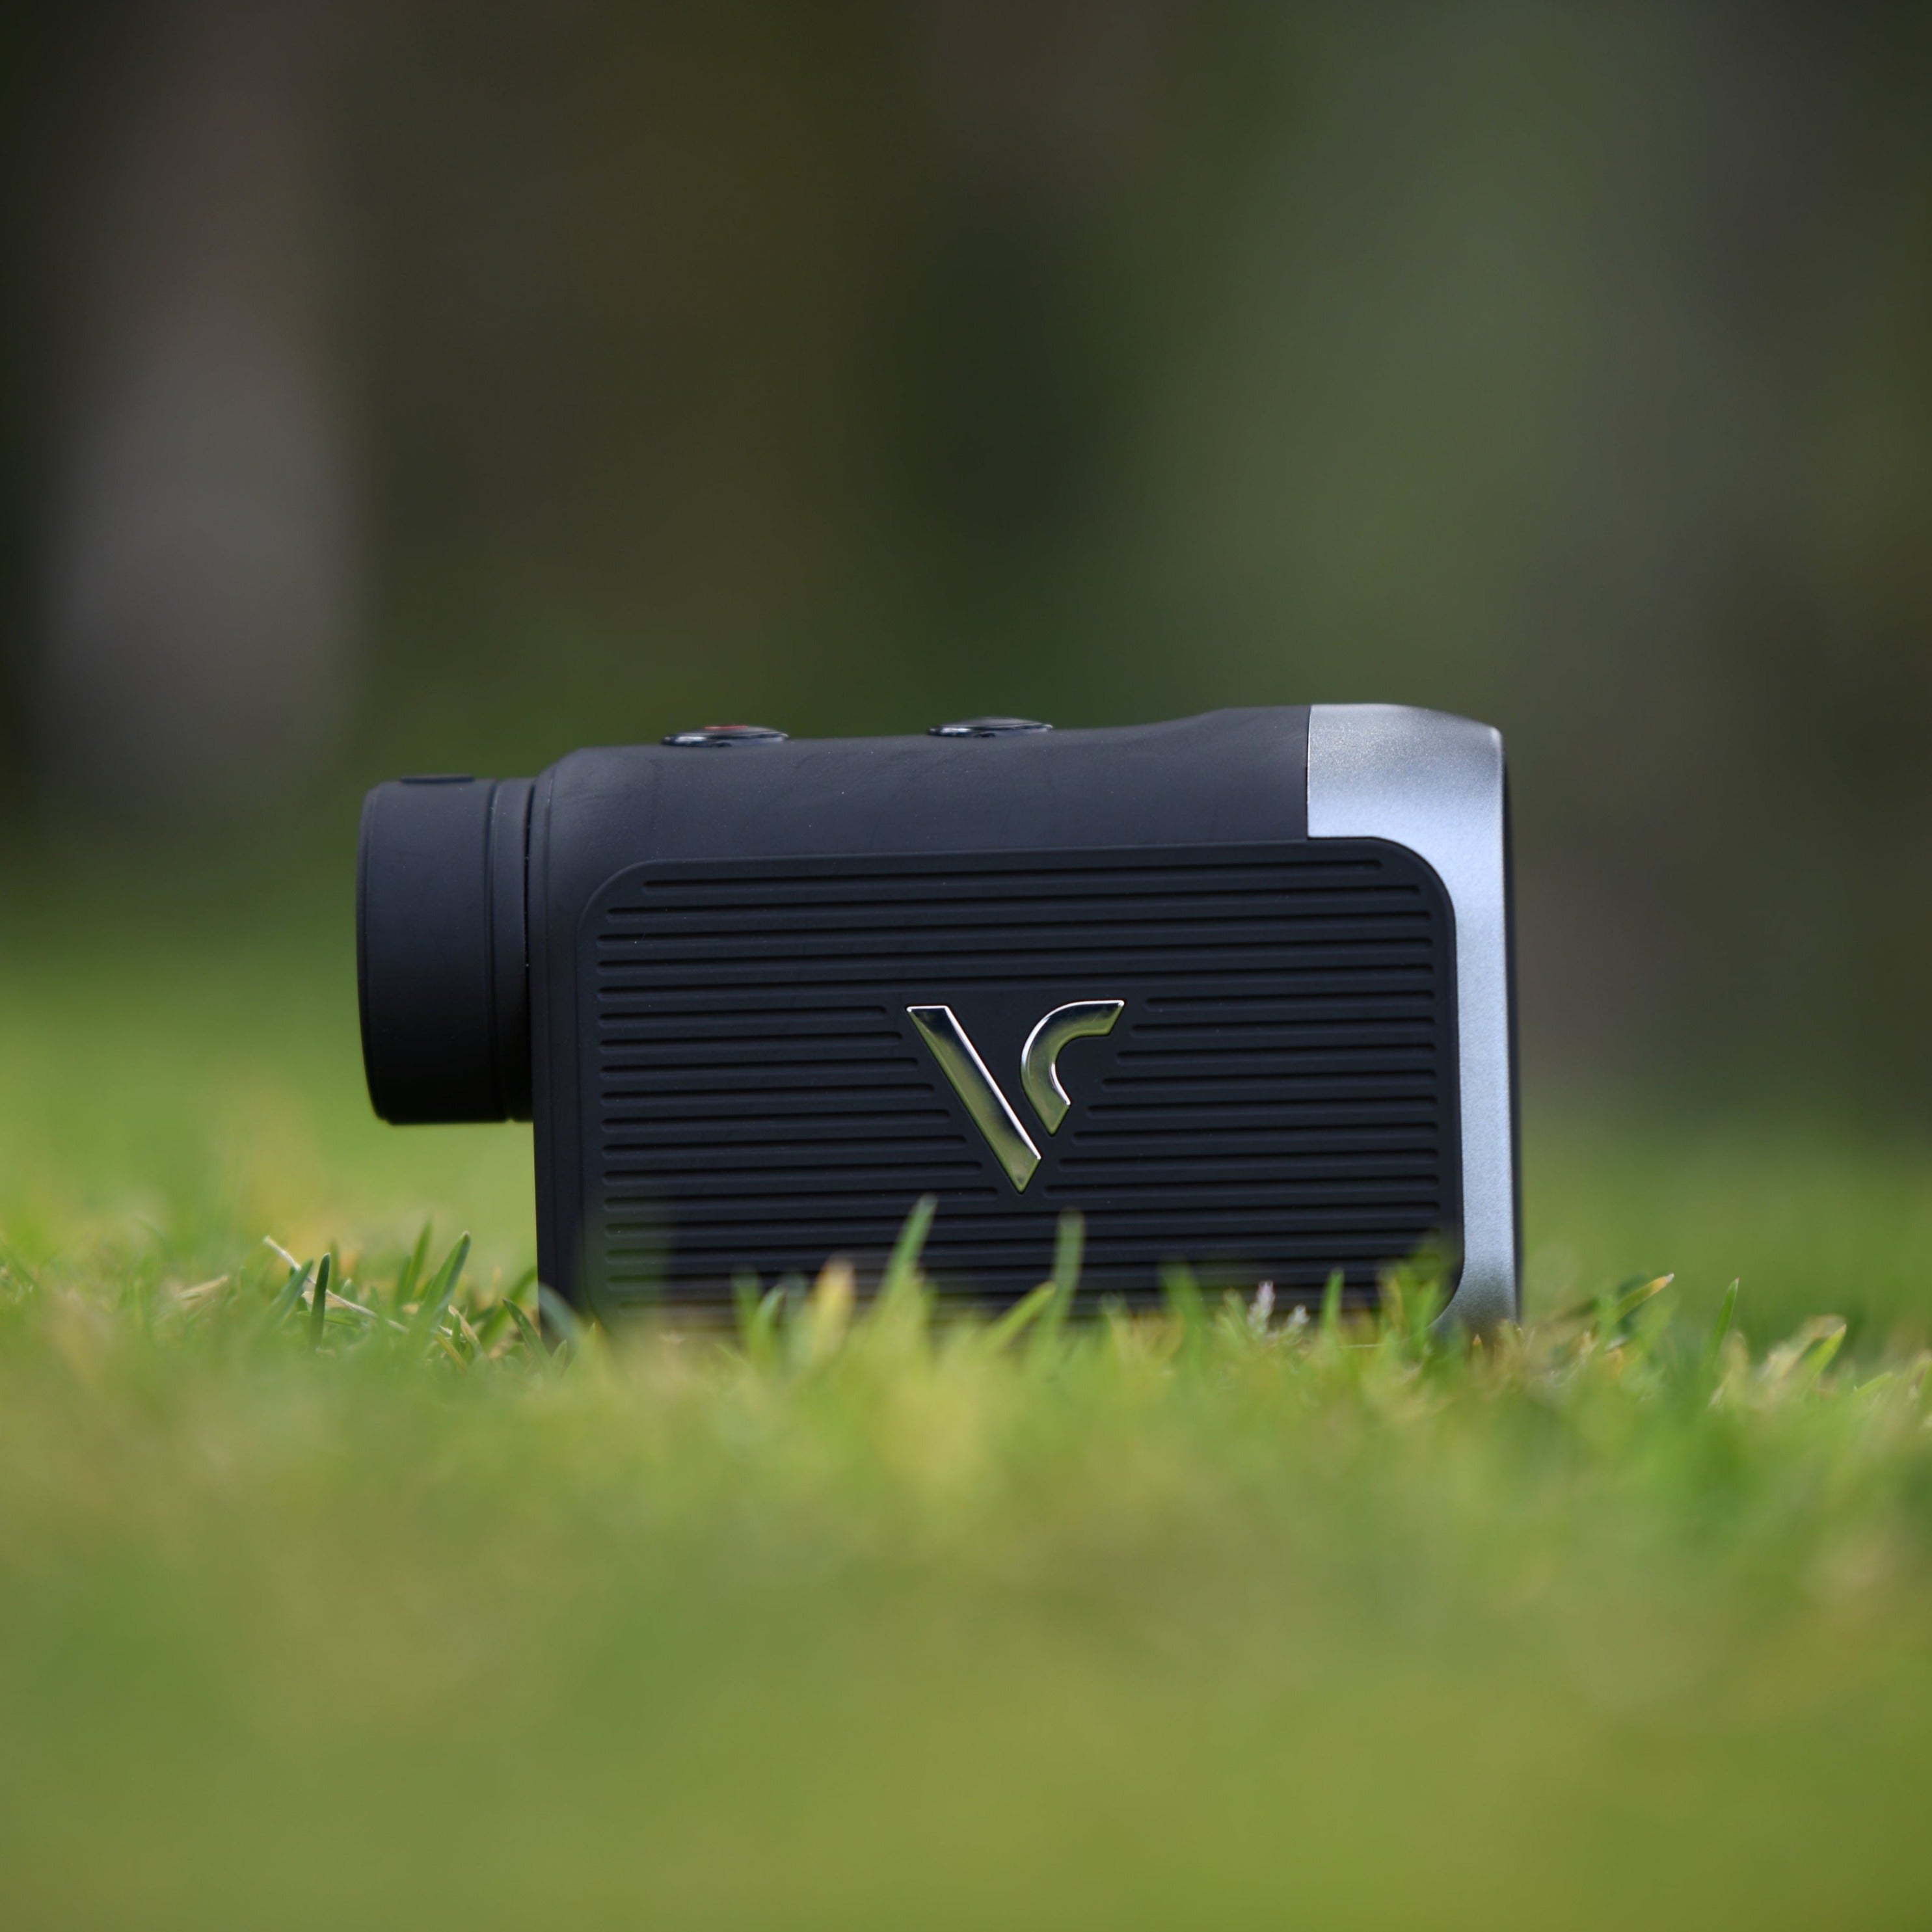 voice caddie black l5 laser rangefinder with slope on grass